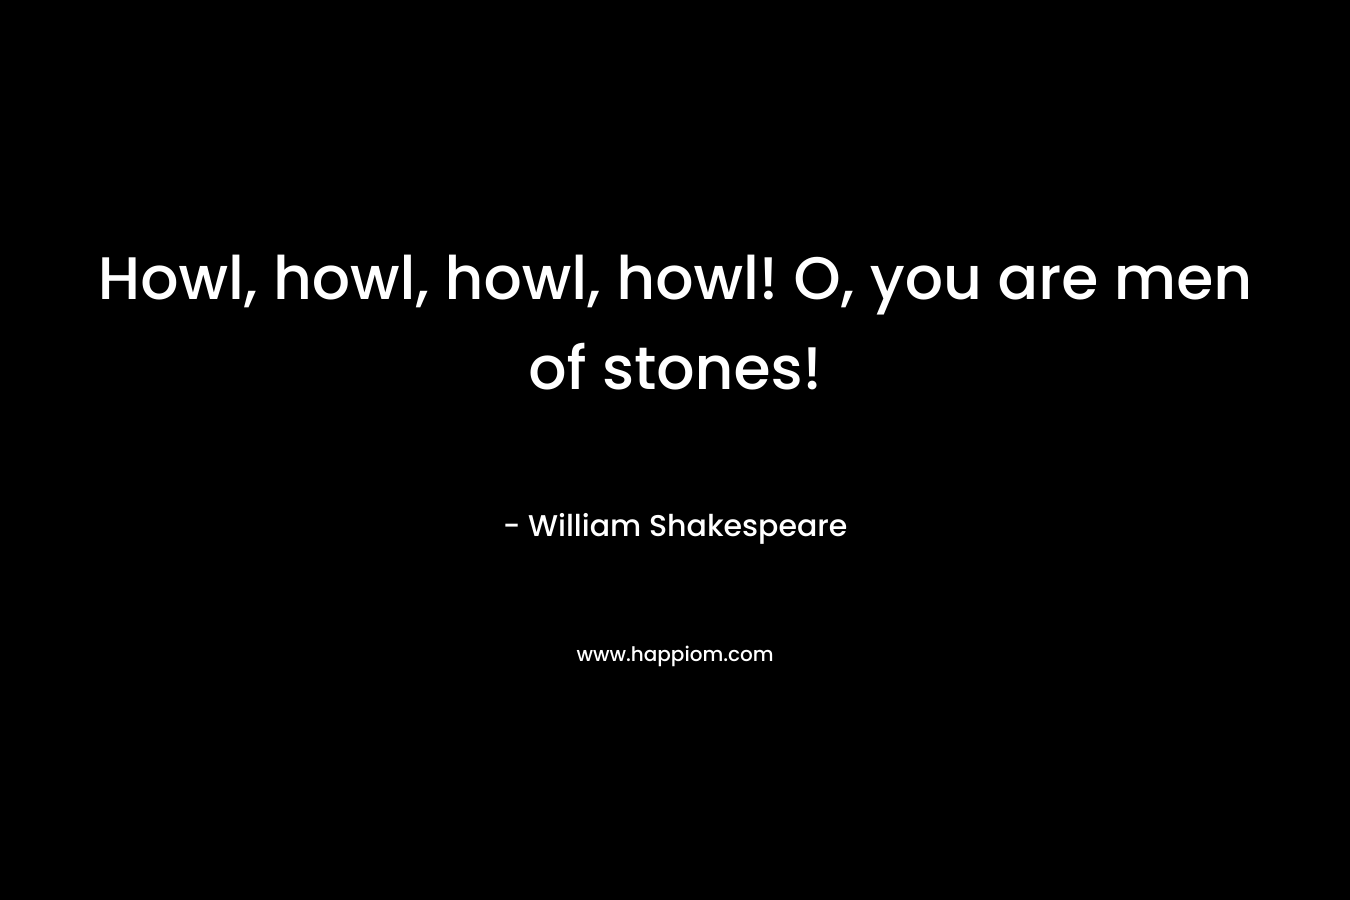 Howl, howl, howl, howl! O, you are men of stones! – William Shakespeare